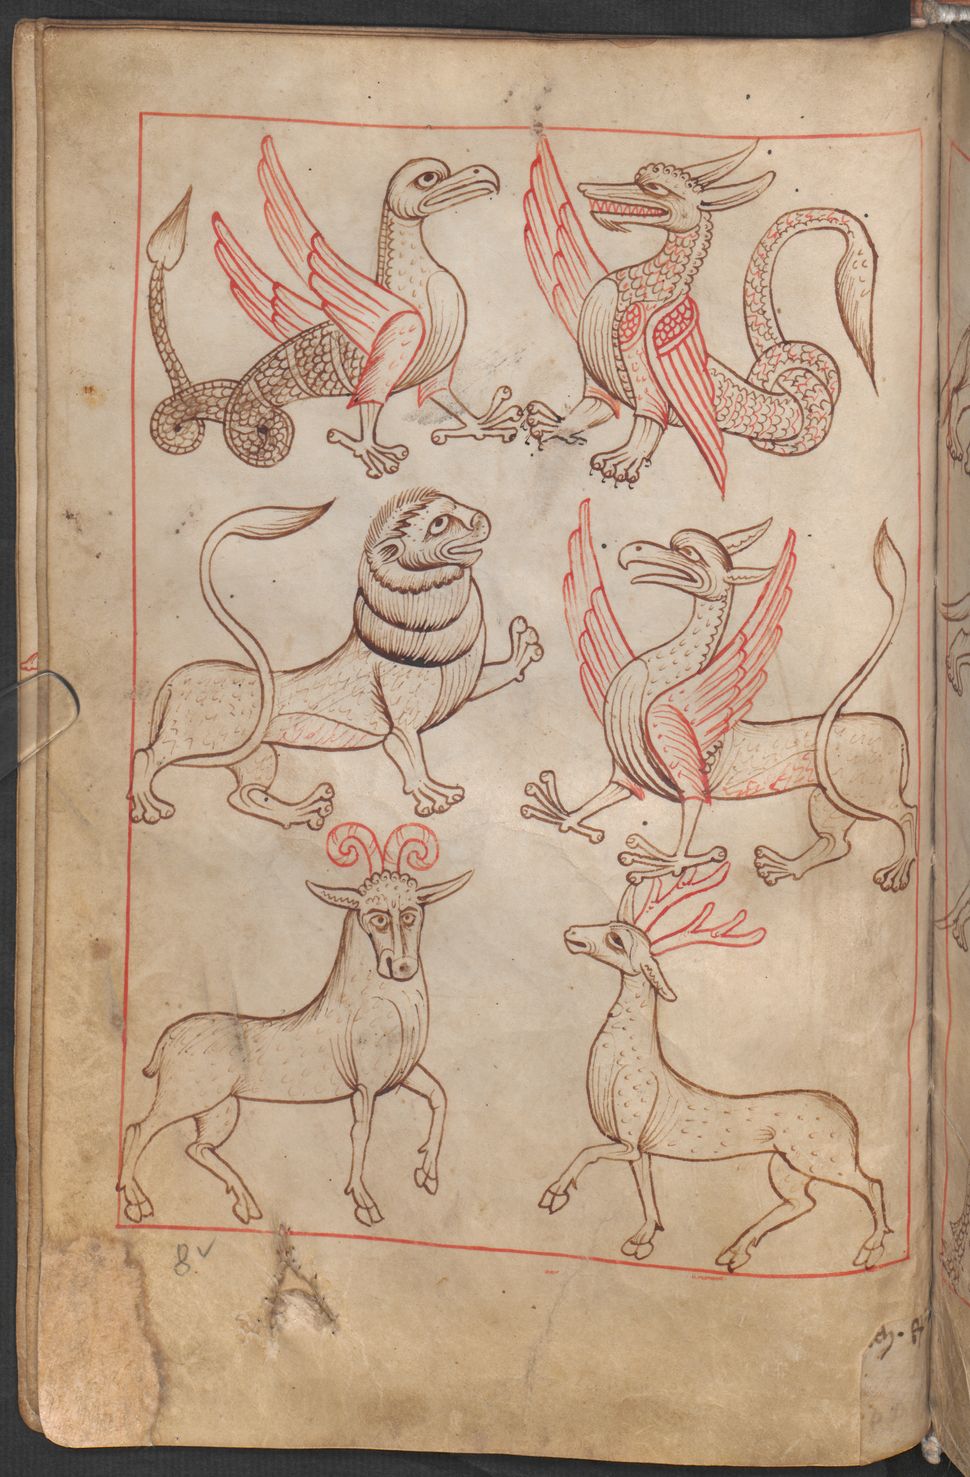 Reiner Musterbuch, Österreichischen Nationalbibliothek, Anfang des 13. Jahrhunderts (1208-1213), Codex Vindobonensis 507.